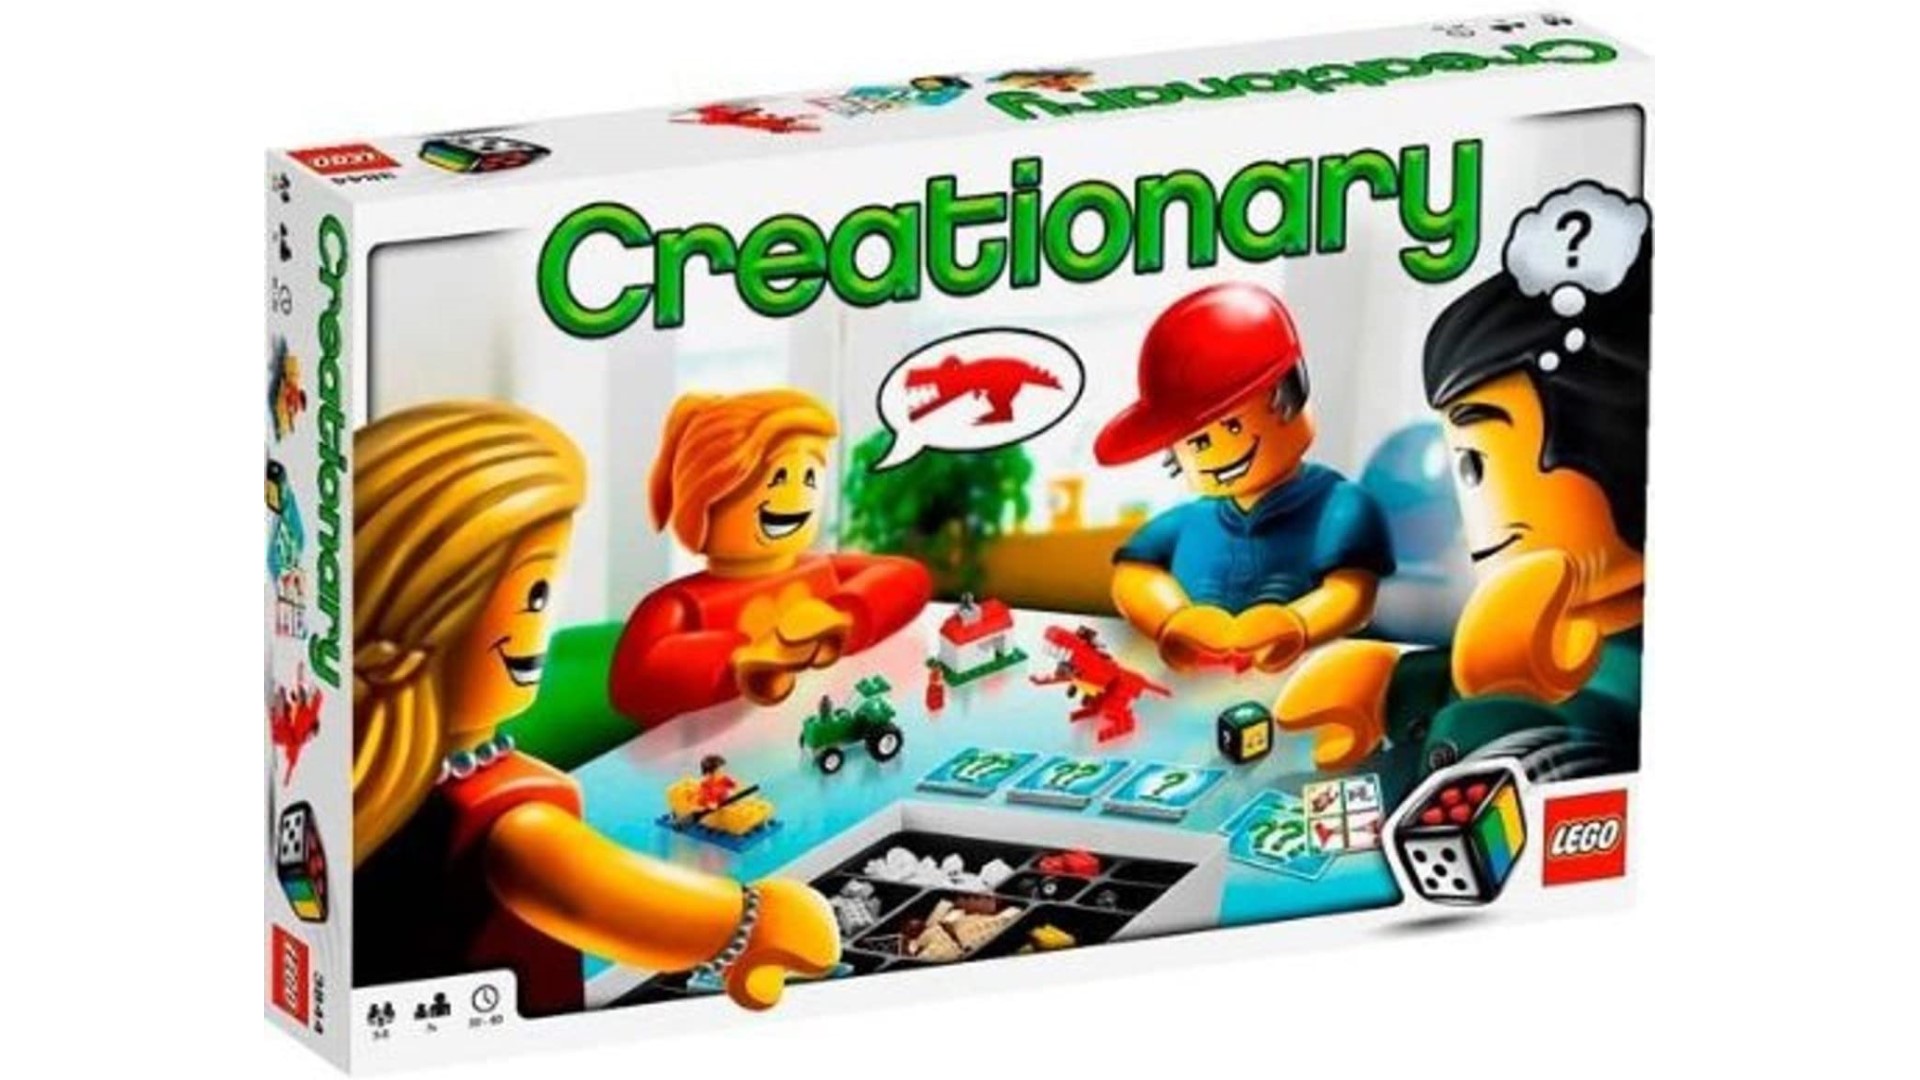 LEGO board games - Creationary box